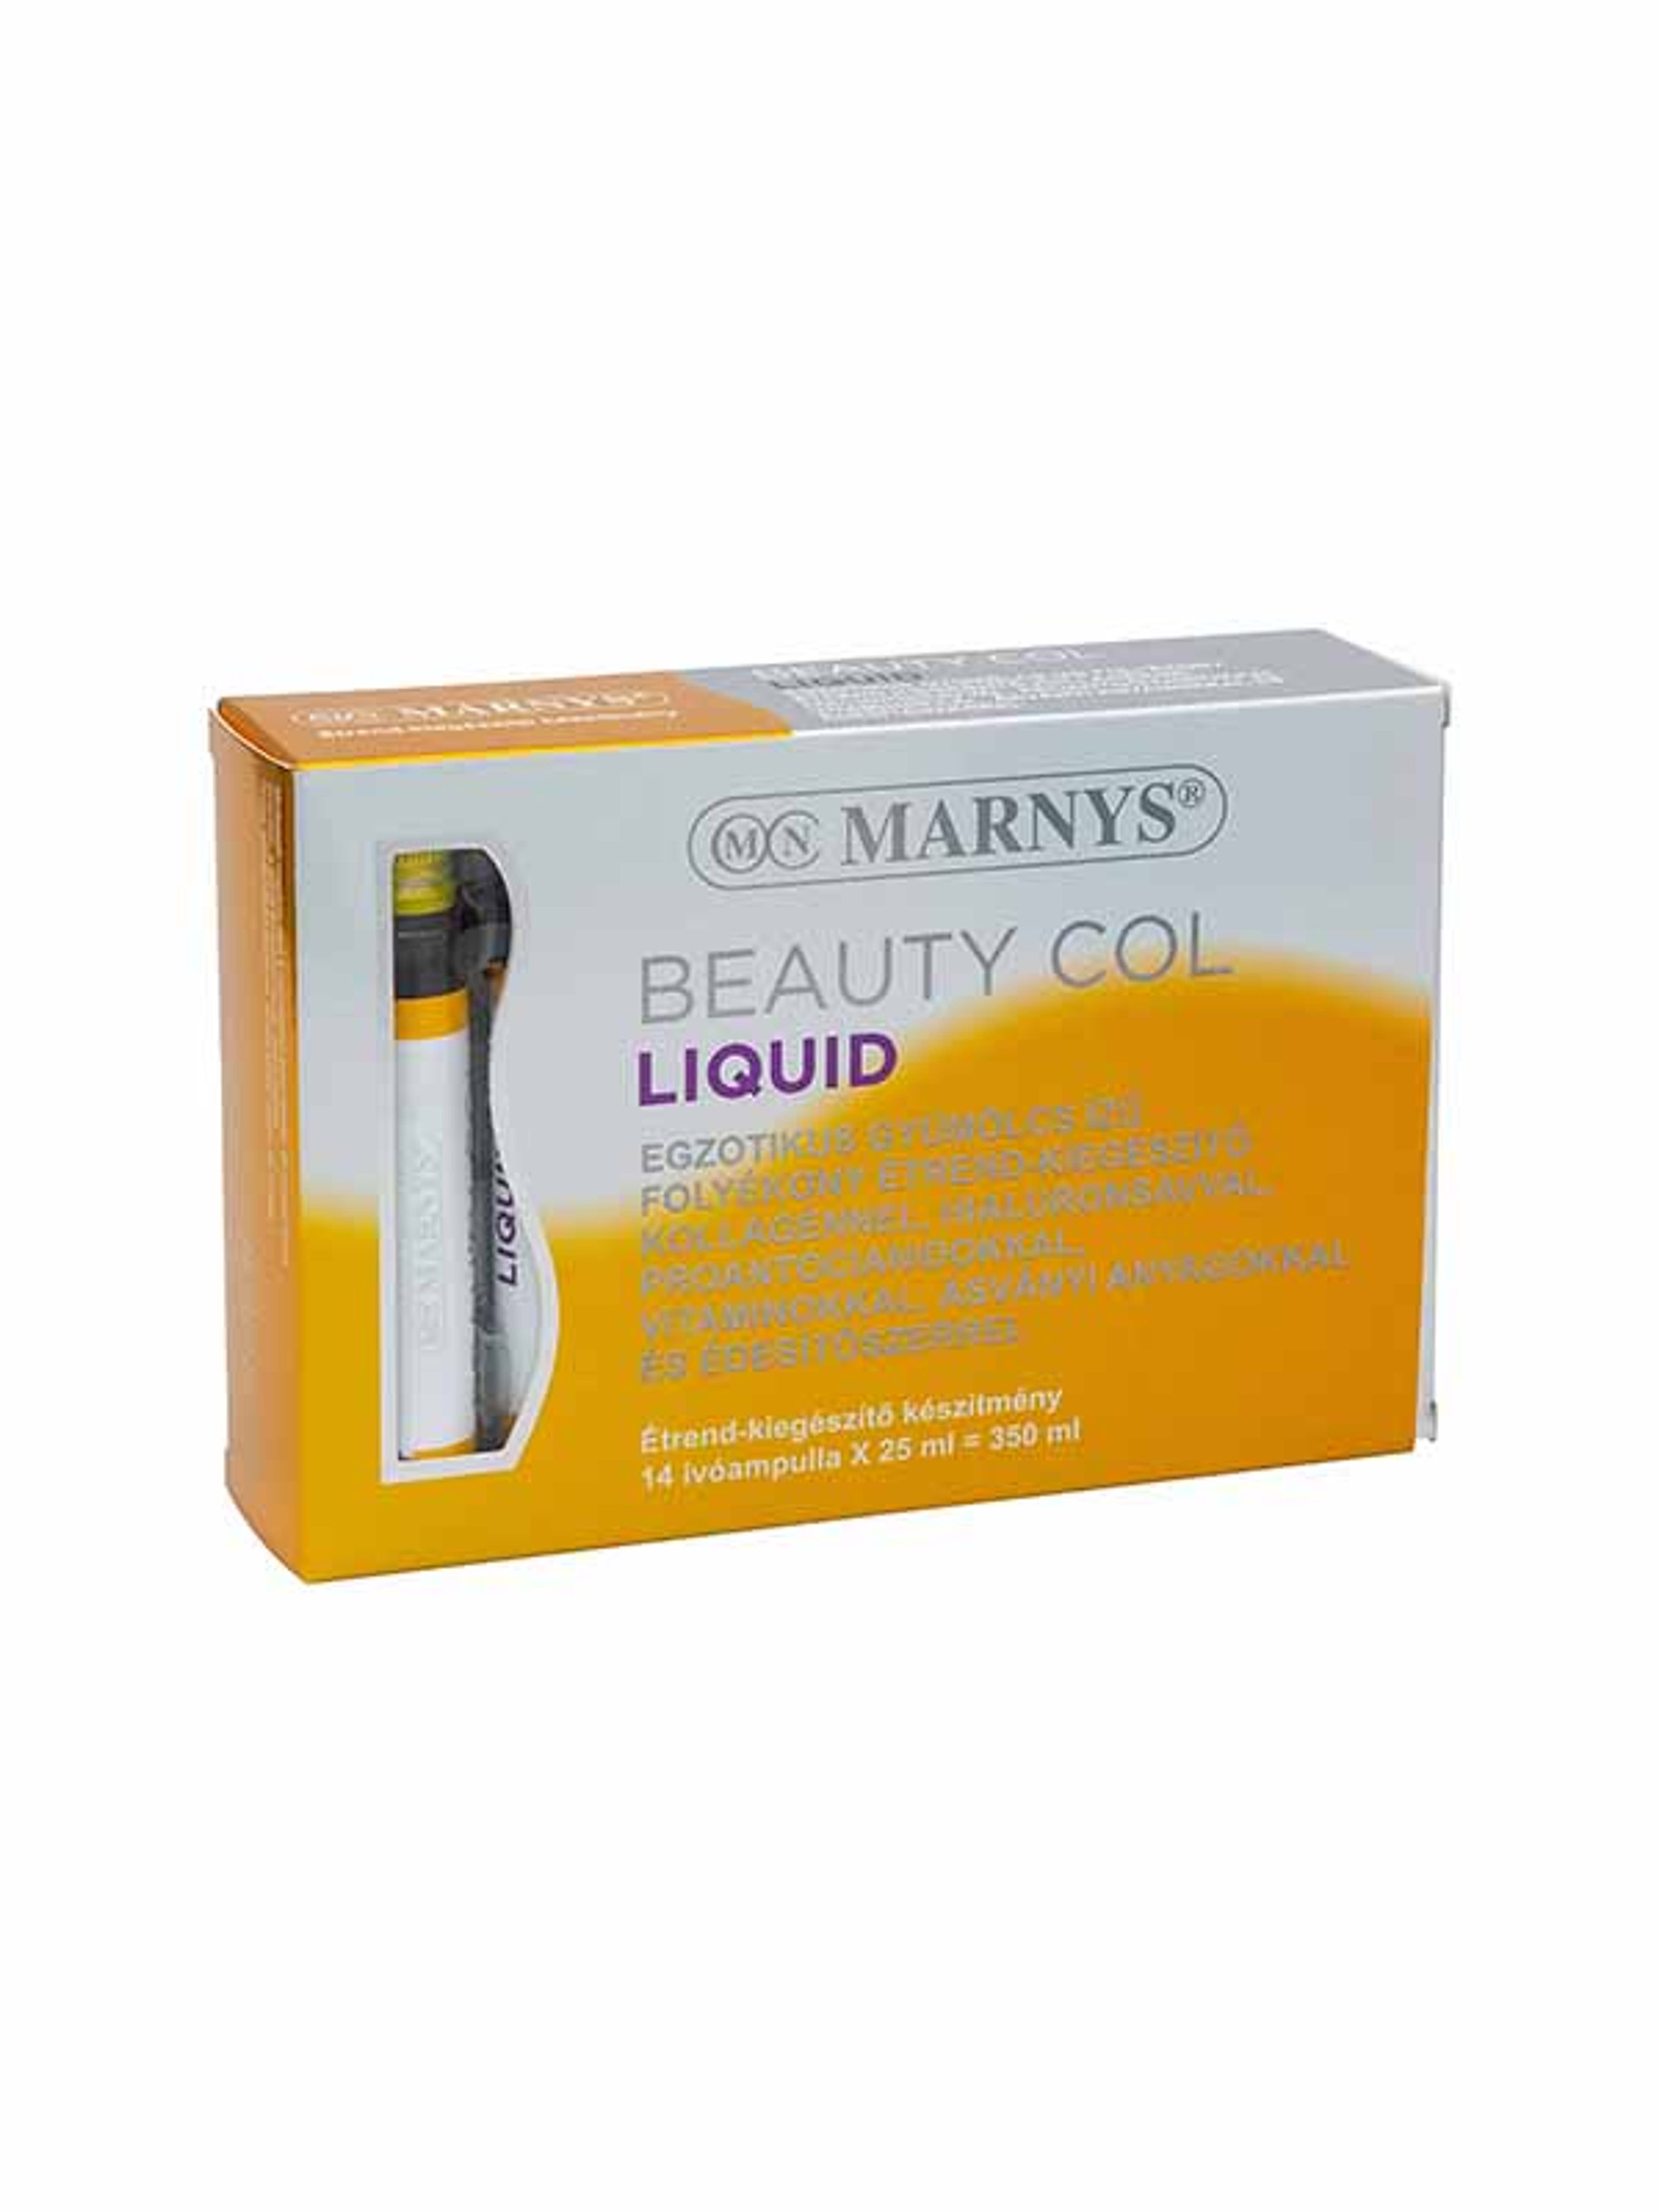 Marnys Beauty Col Liquid Folyékony szépségvitamin kollagénnel ivóampullában (14 x 25 ml) - 350 ml